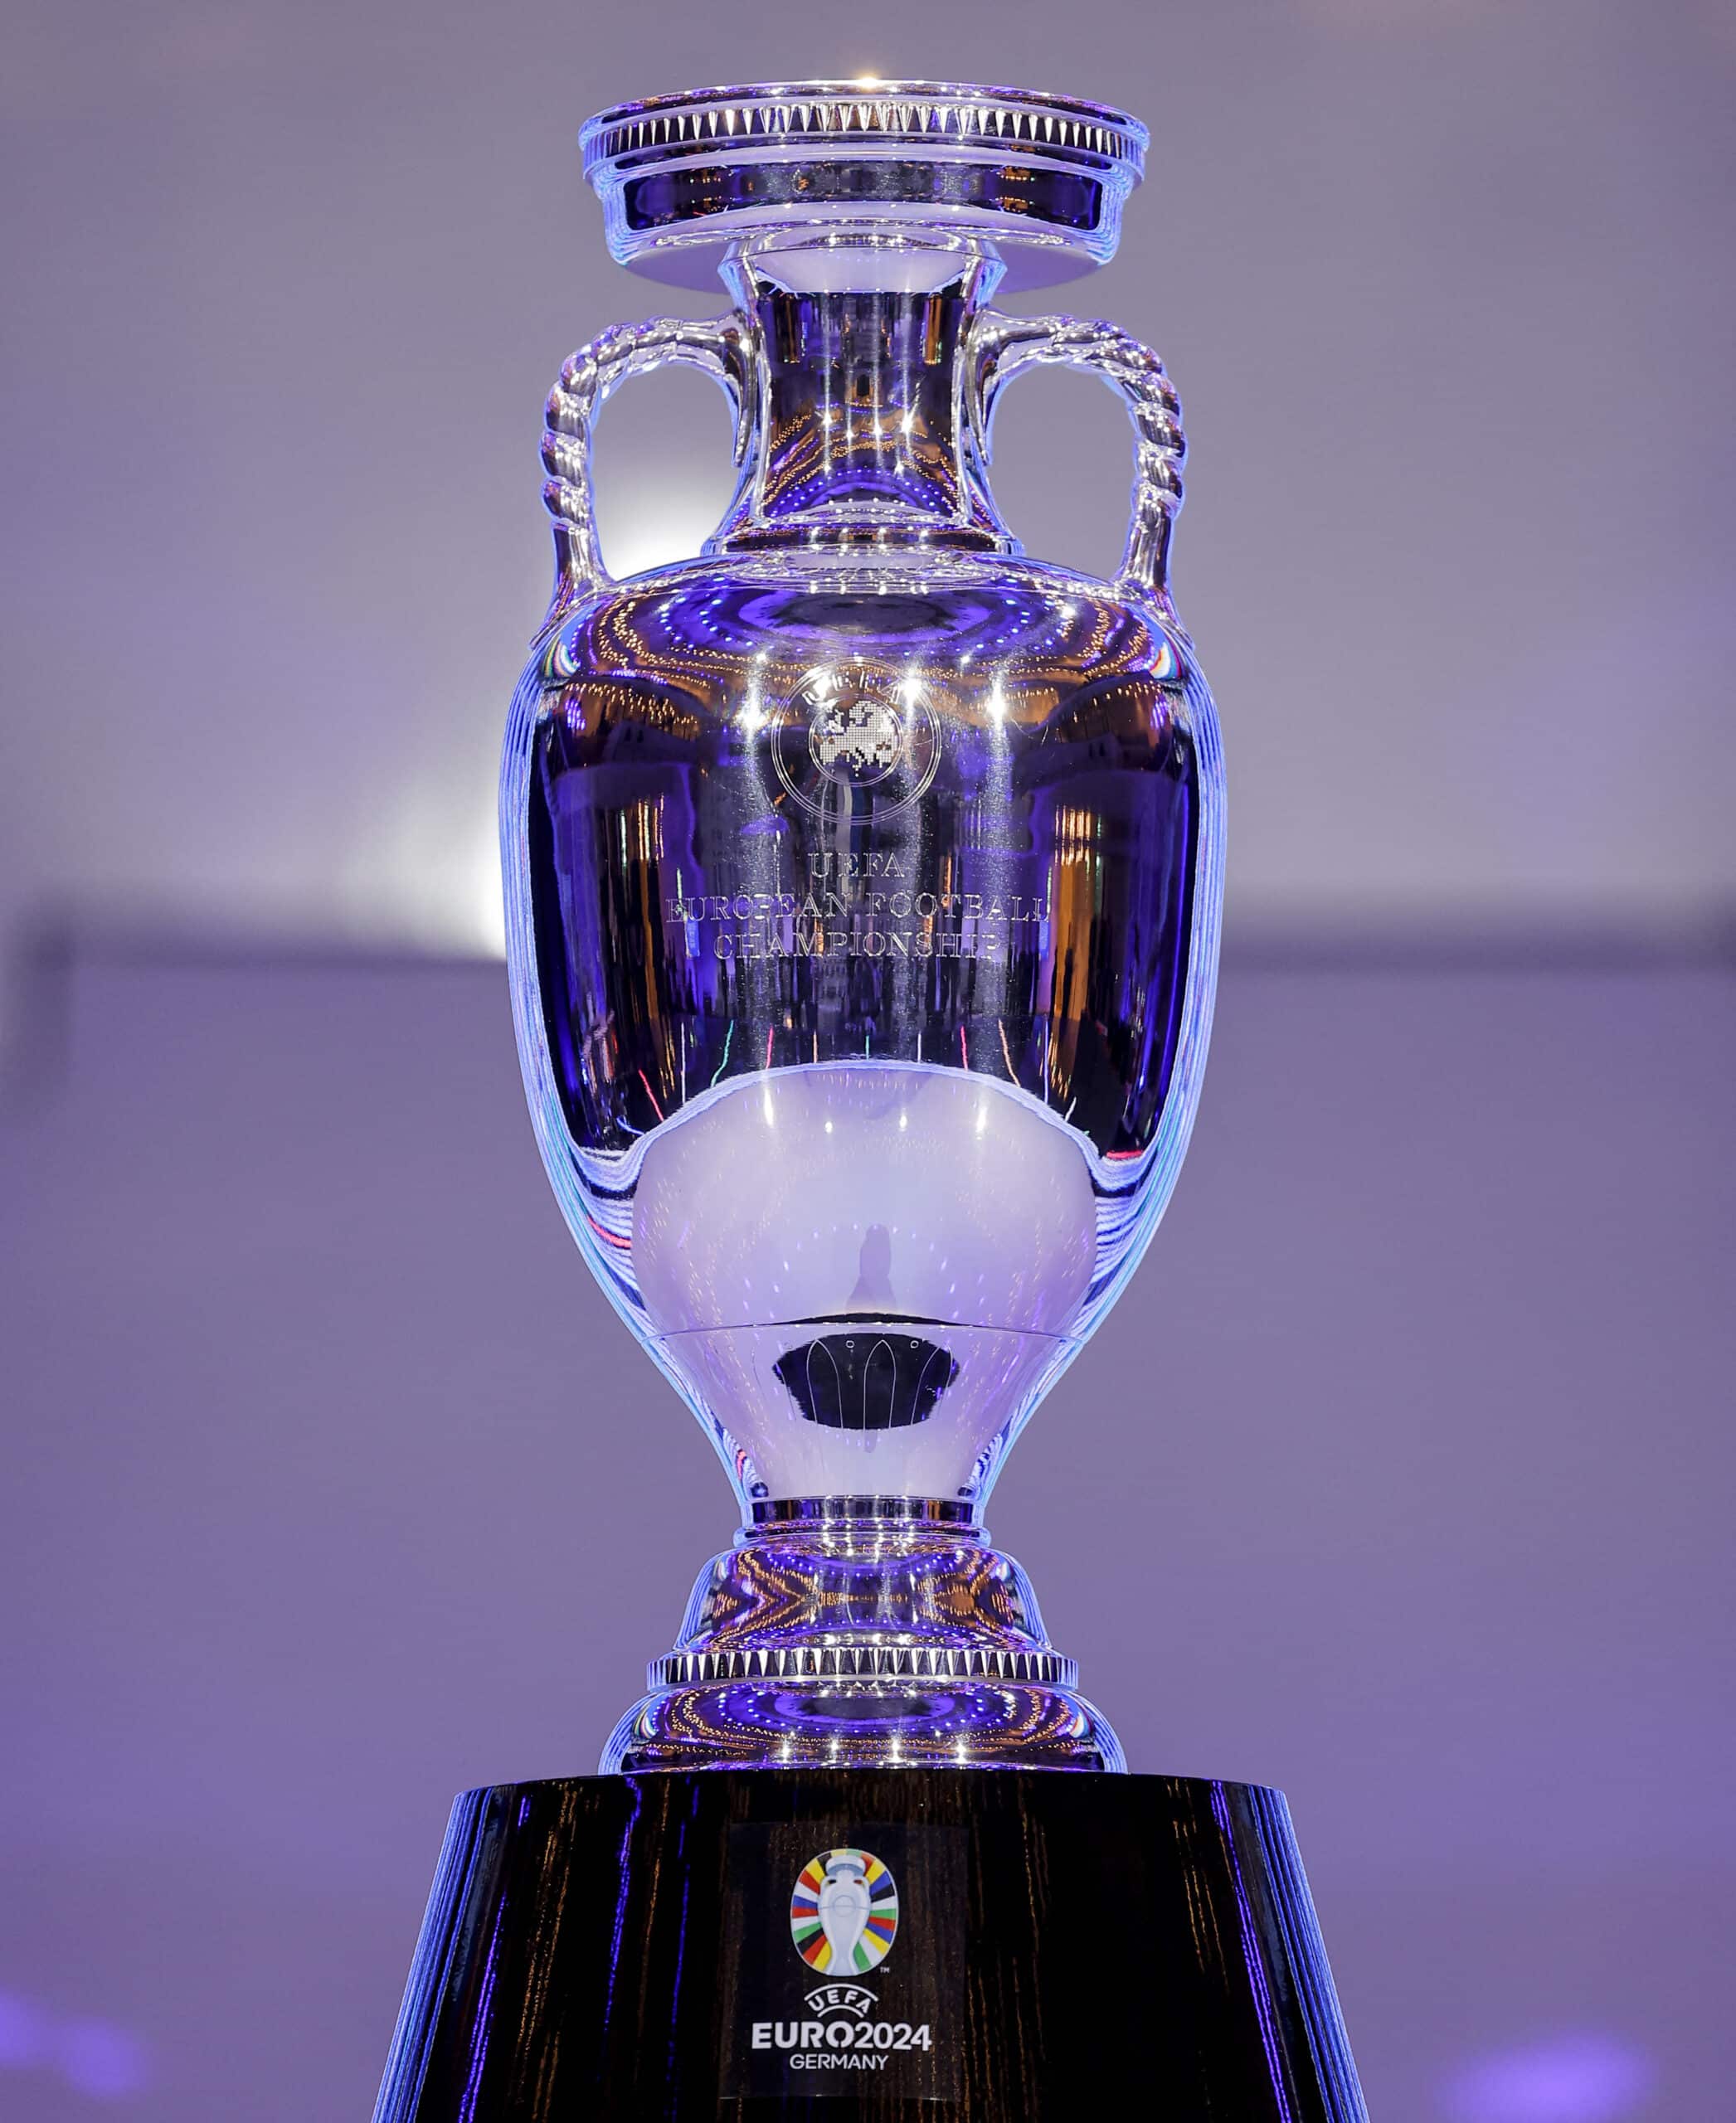 Listo el trofeo de la Eurocopa 2024, el cual fue presentado este sábado en el sorteo.